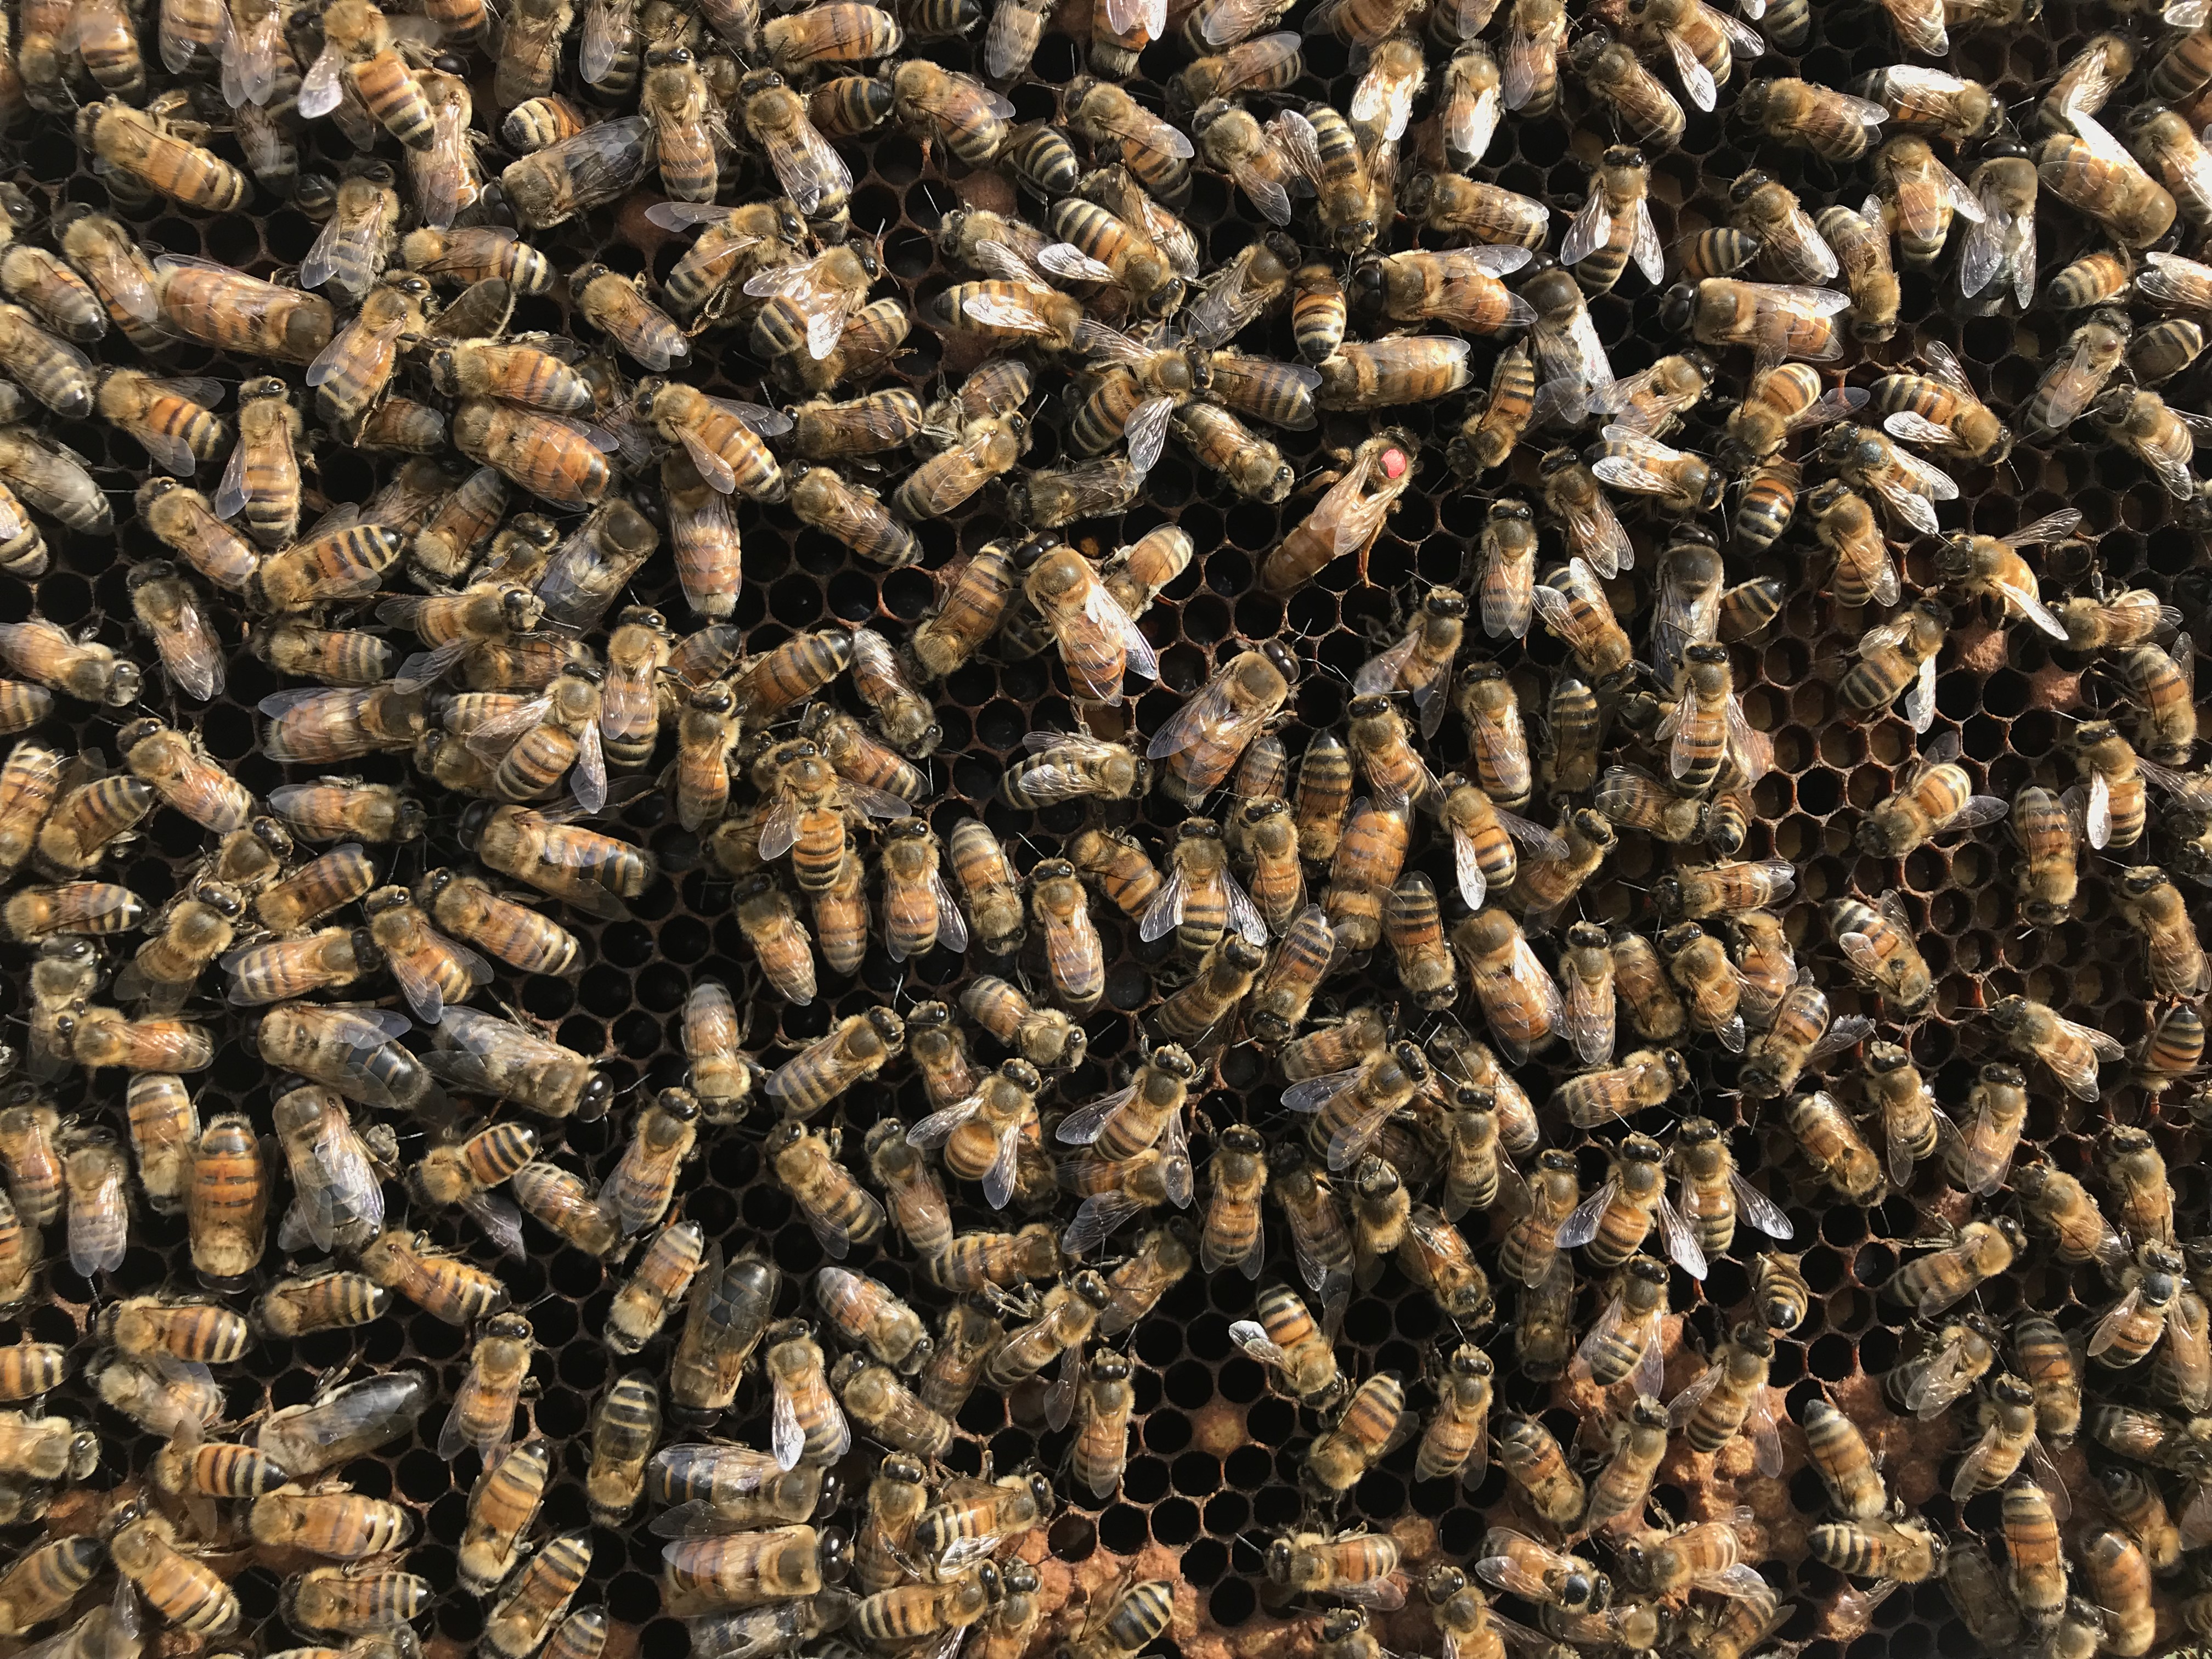 Les ruches des Evaux